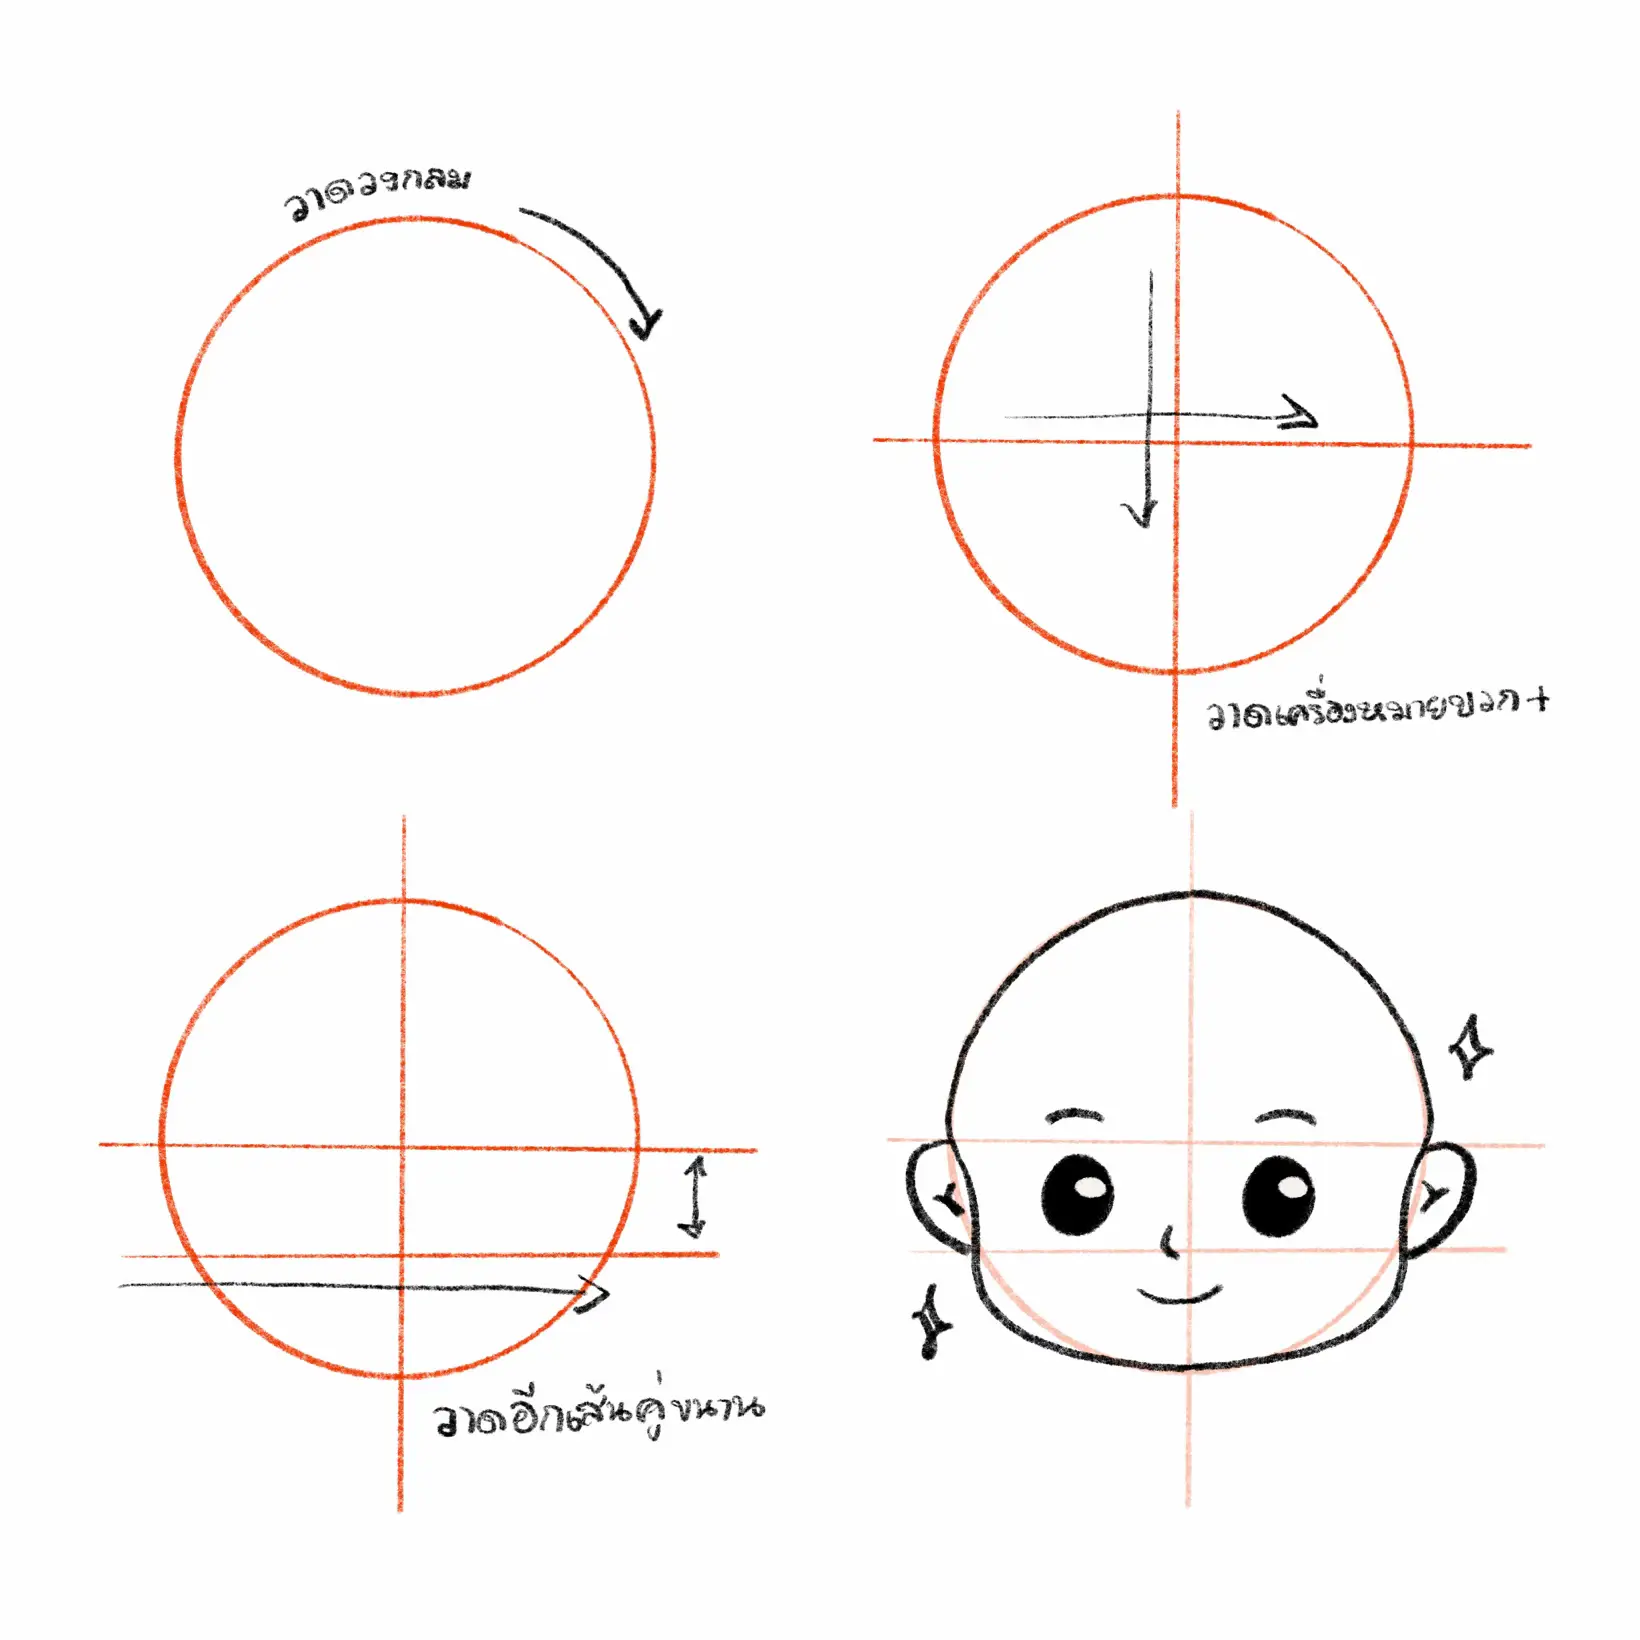 How To สอนวาดโครงสร้างหน้าการ์ตูน ง่ายๆๆ ✨💕 | แกลเลอรีที่โพสต์โดย Fff |  Lemon8